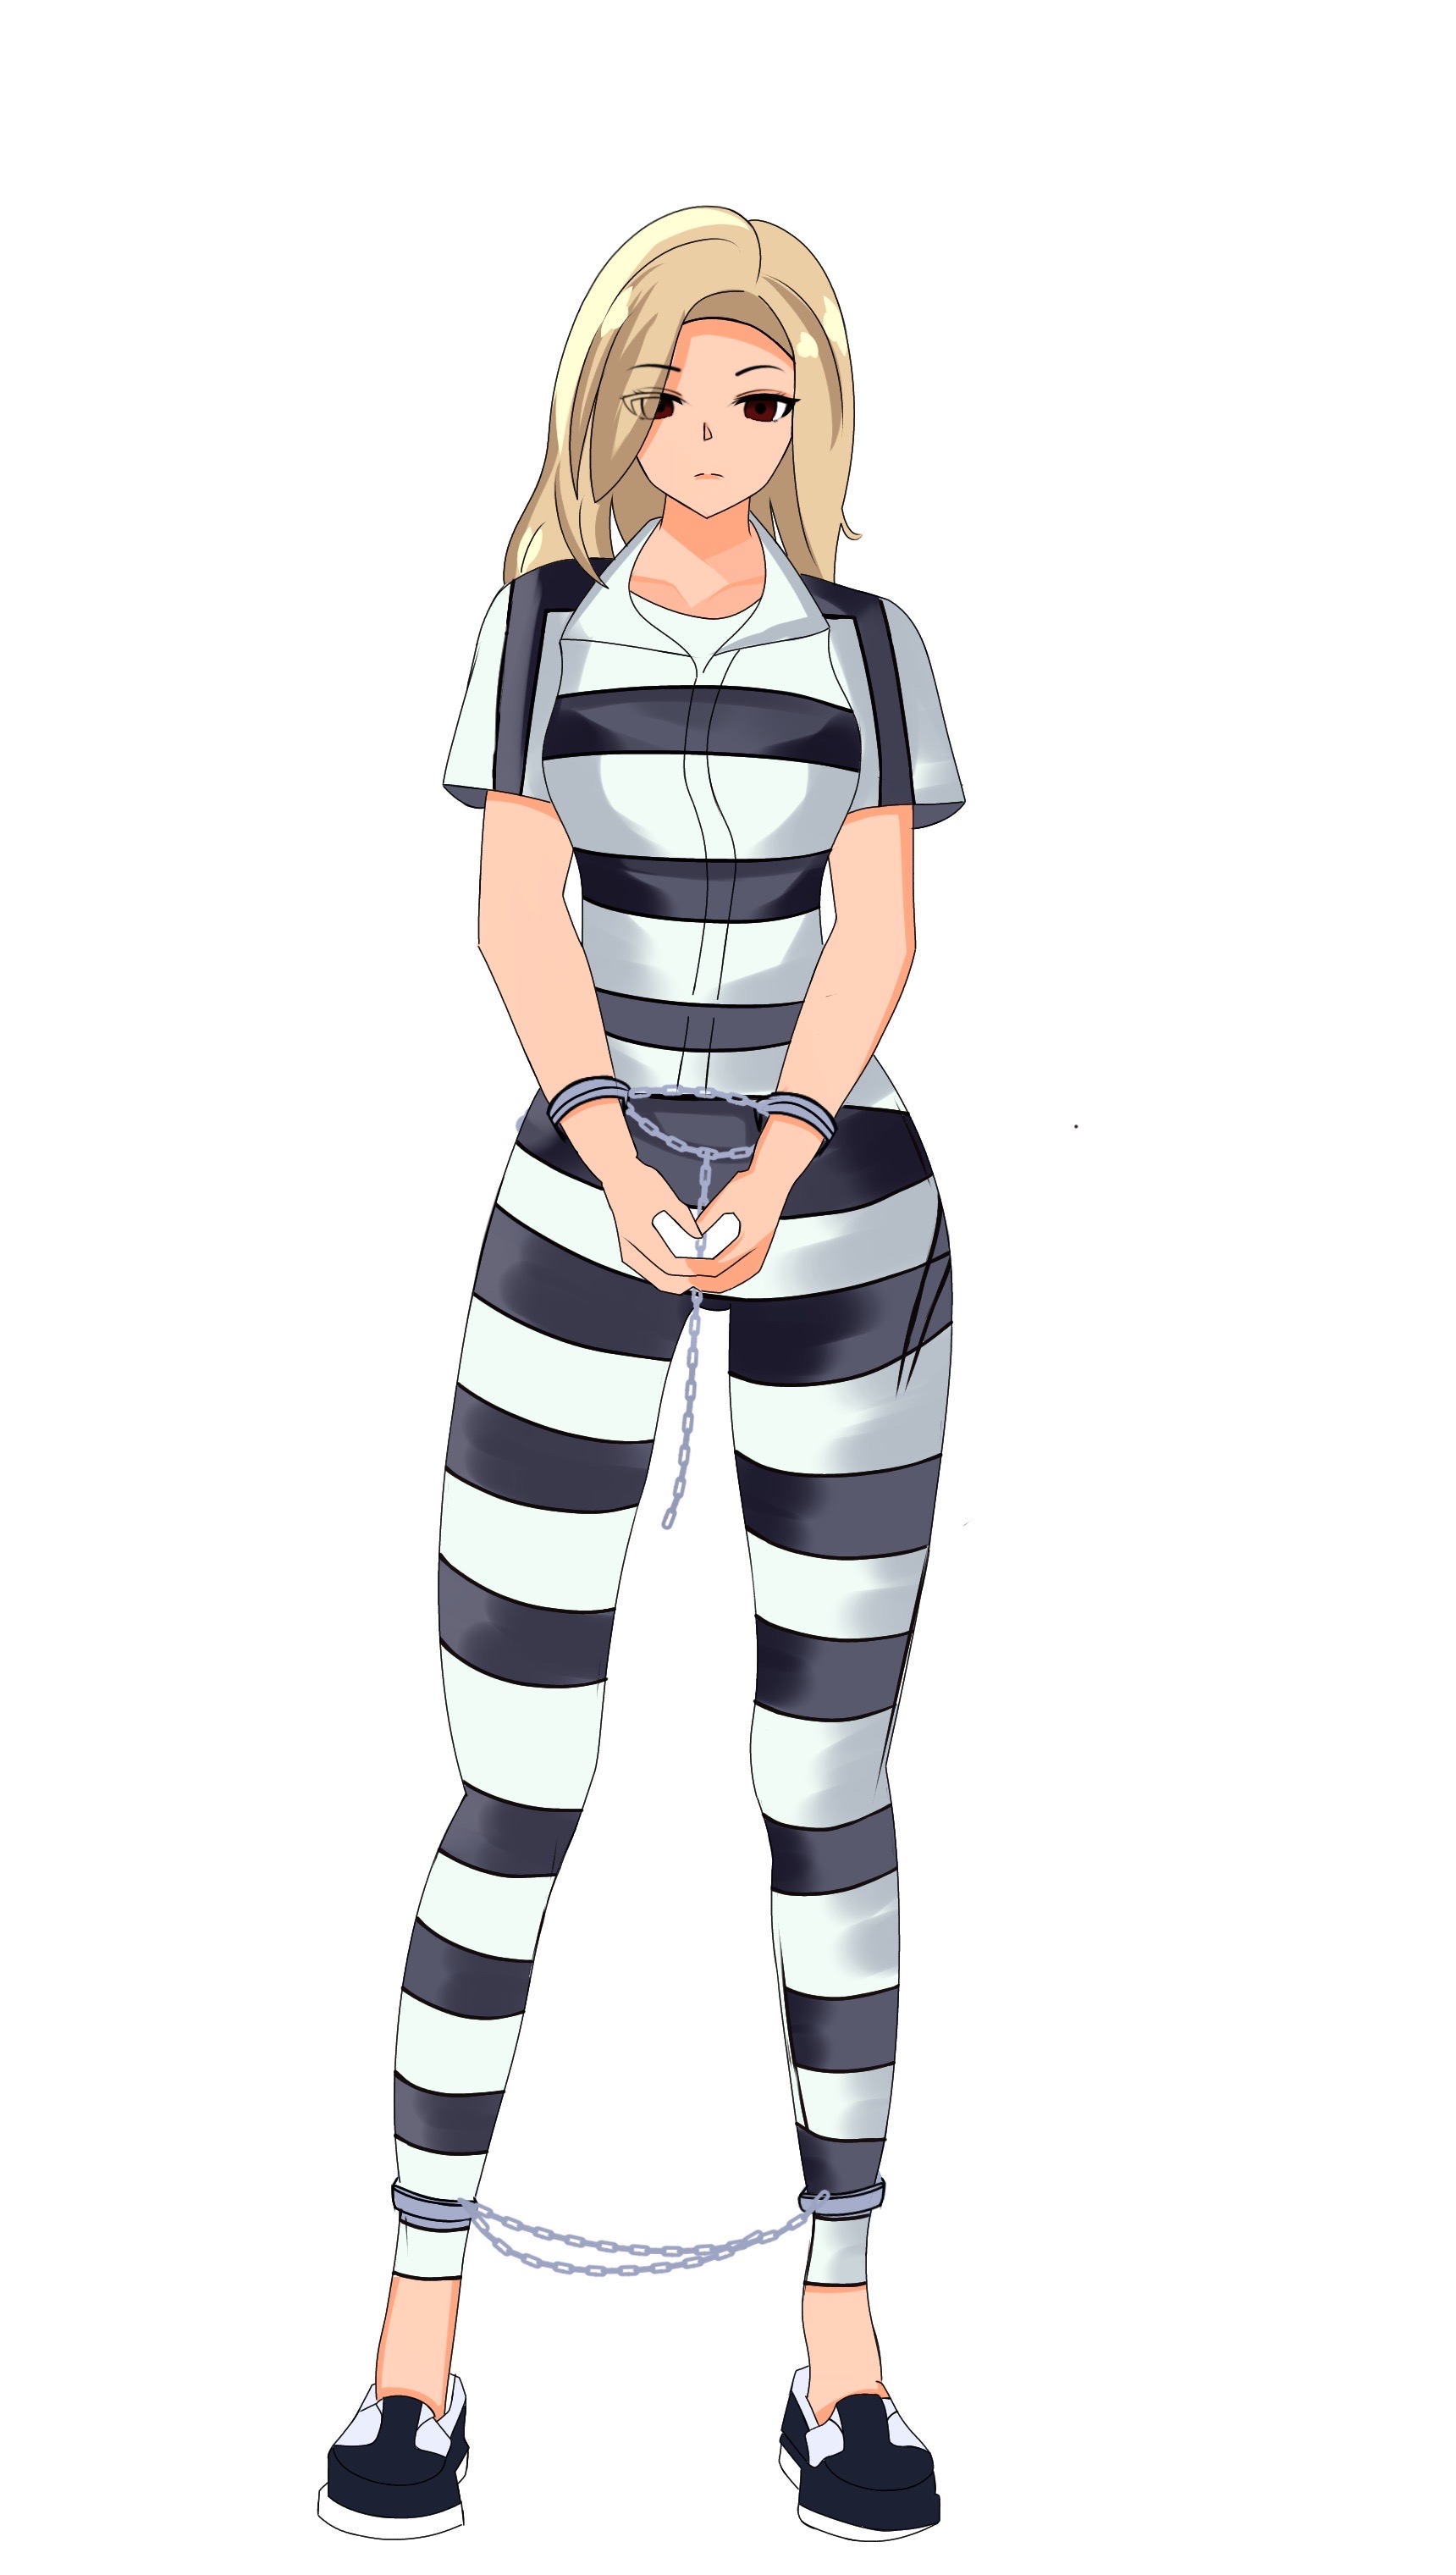 Allison in Prison Jumpsuit (BW stripes) by Dsco42 on DeviantArt